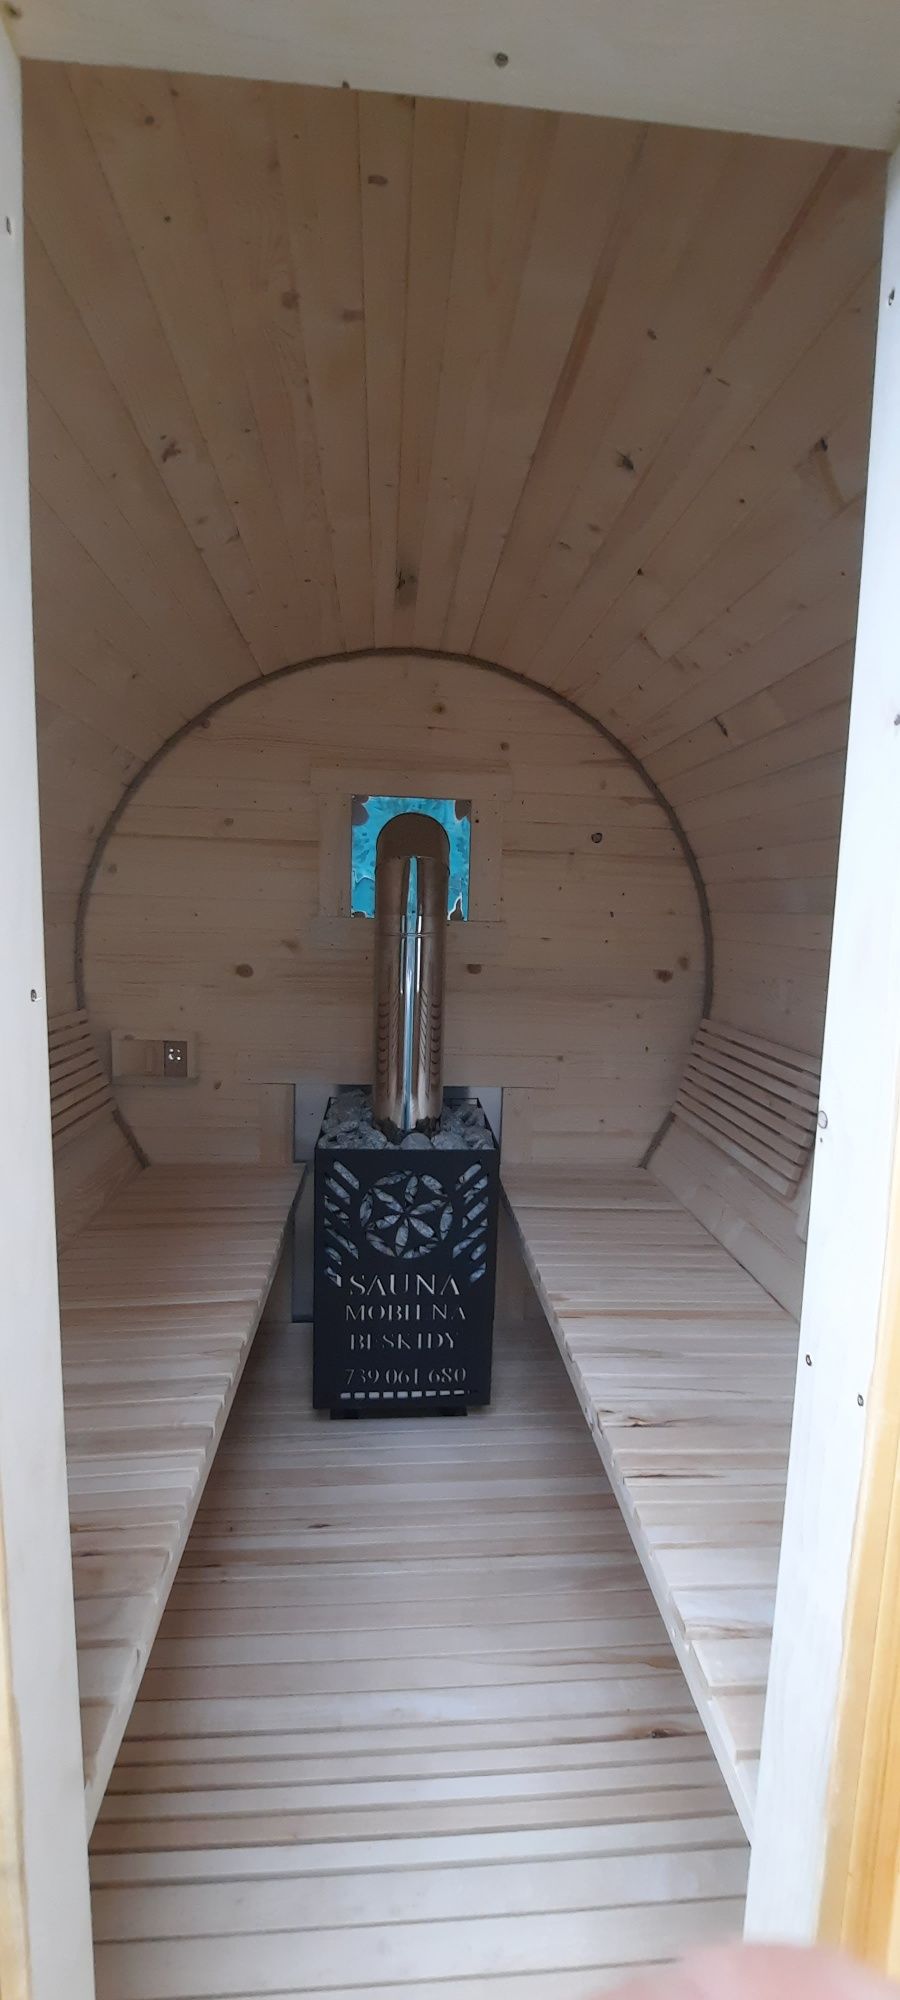 Sauna beczka mobilna sauna plus przyczepka